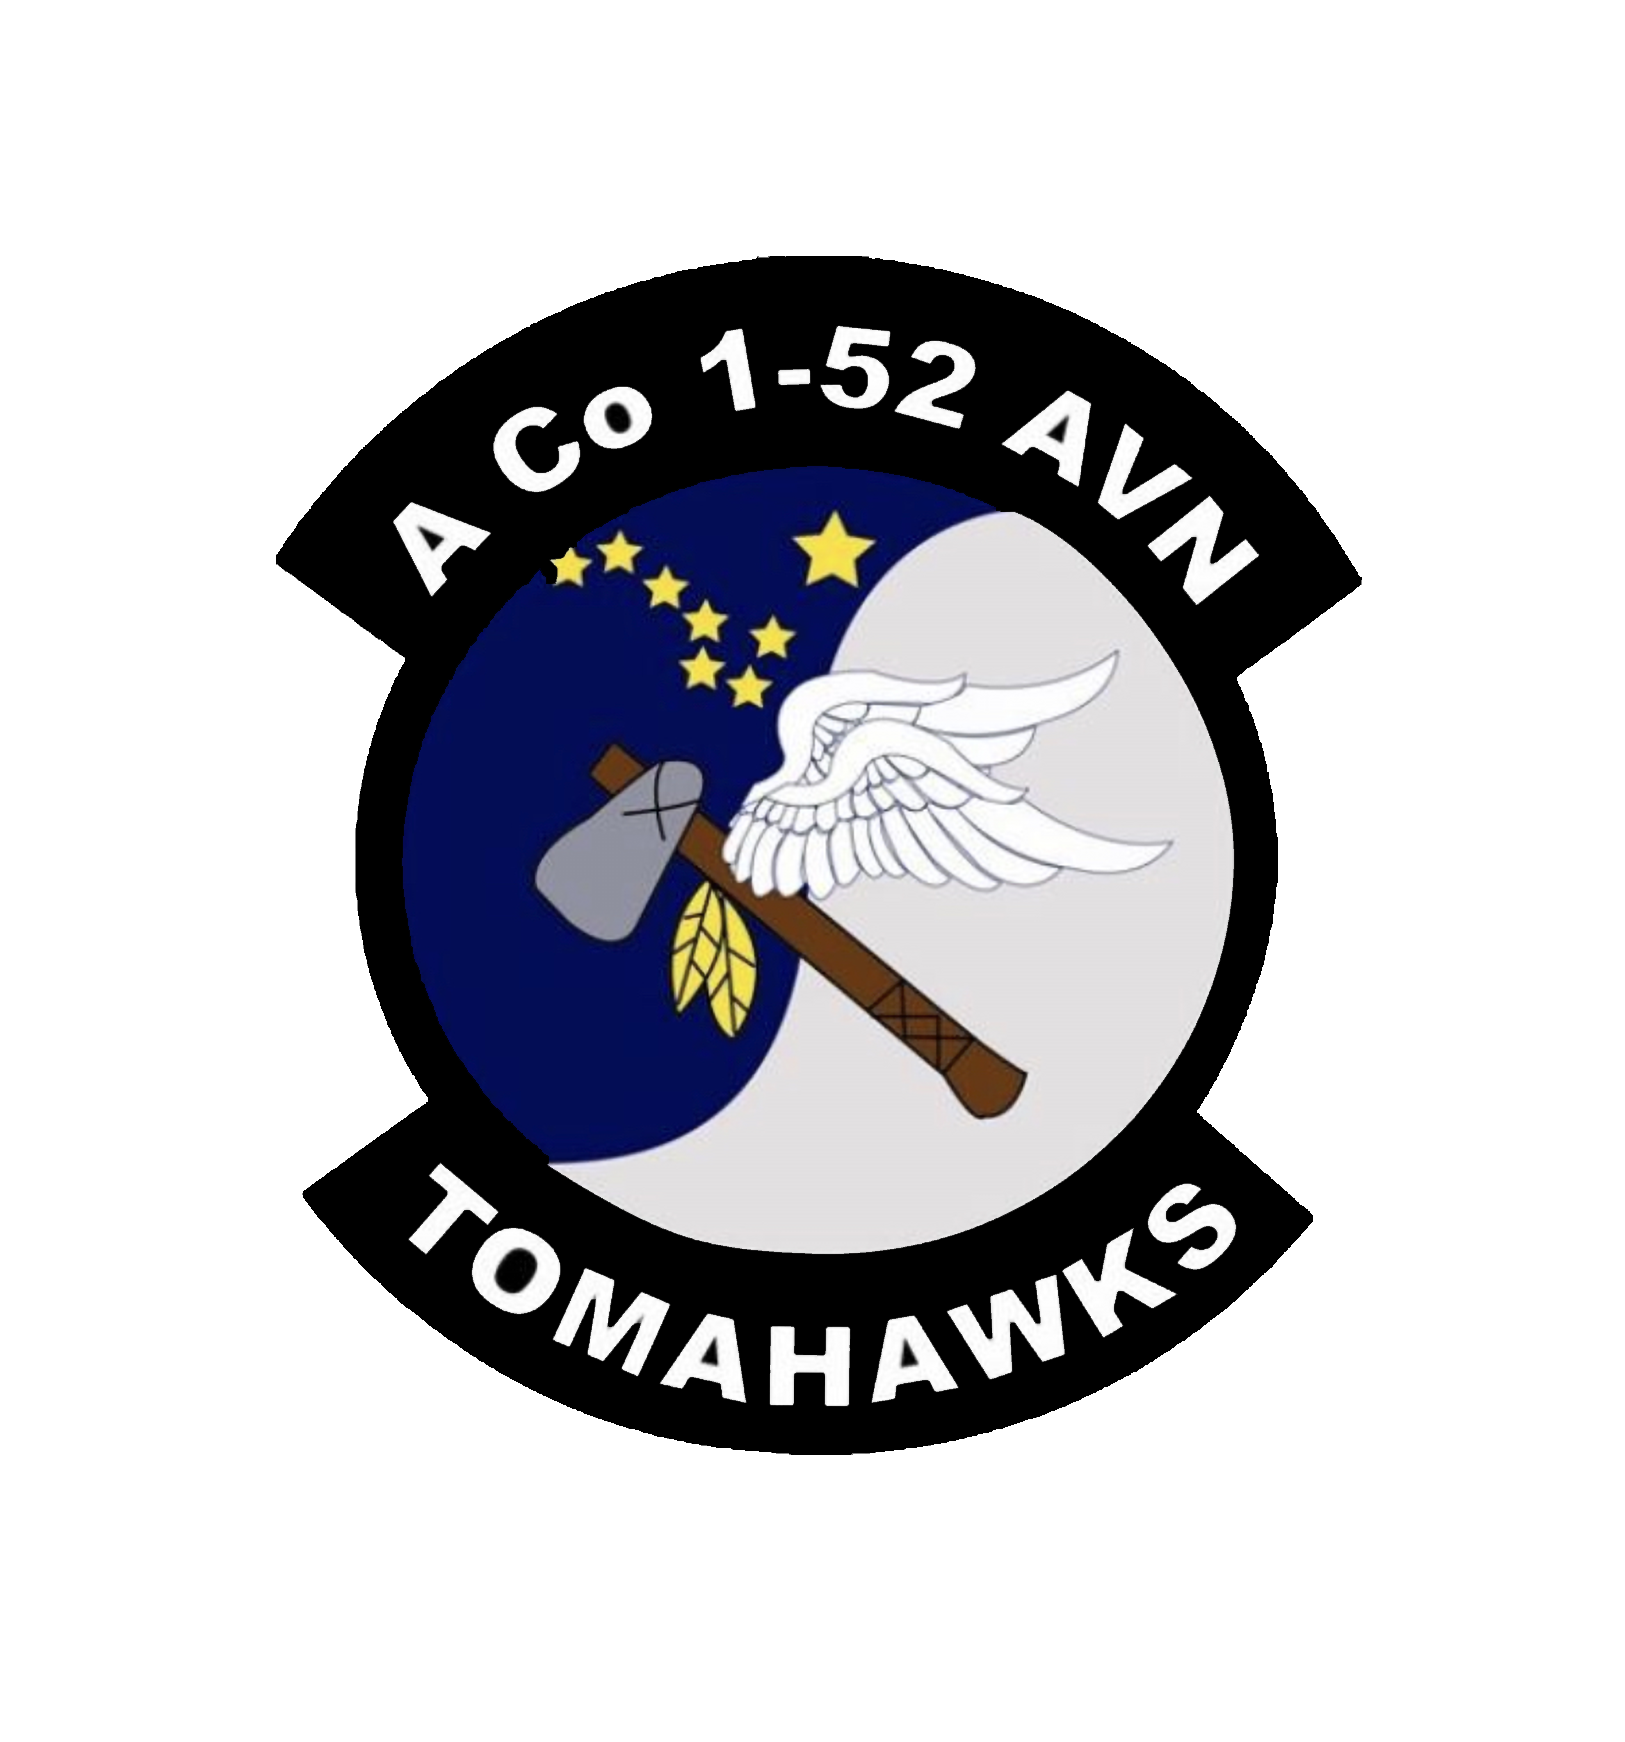 A Co, 1-52 AVN "Tomahawks"